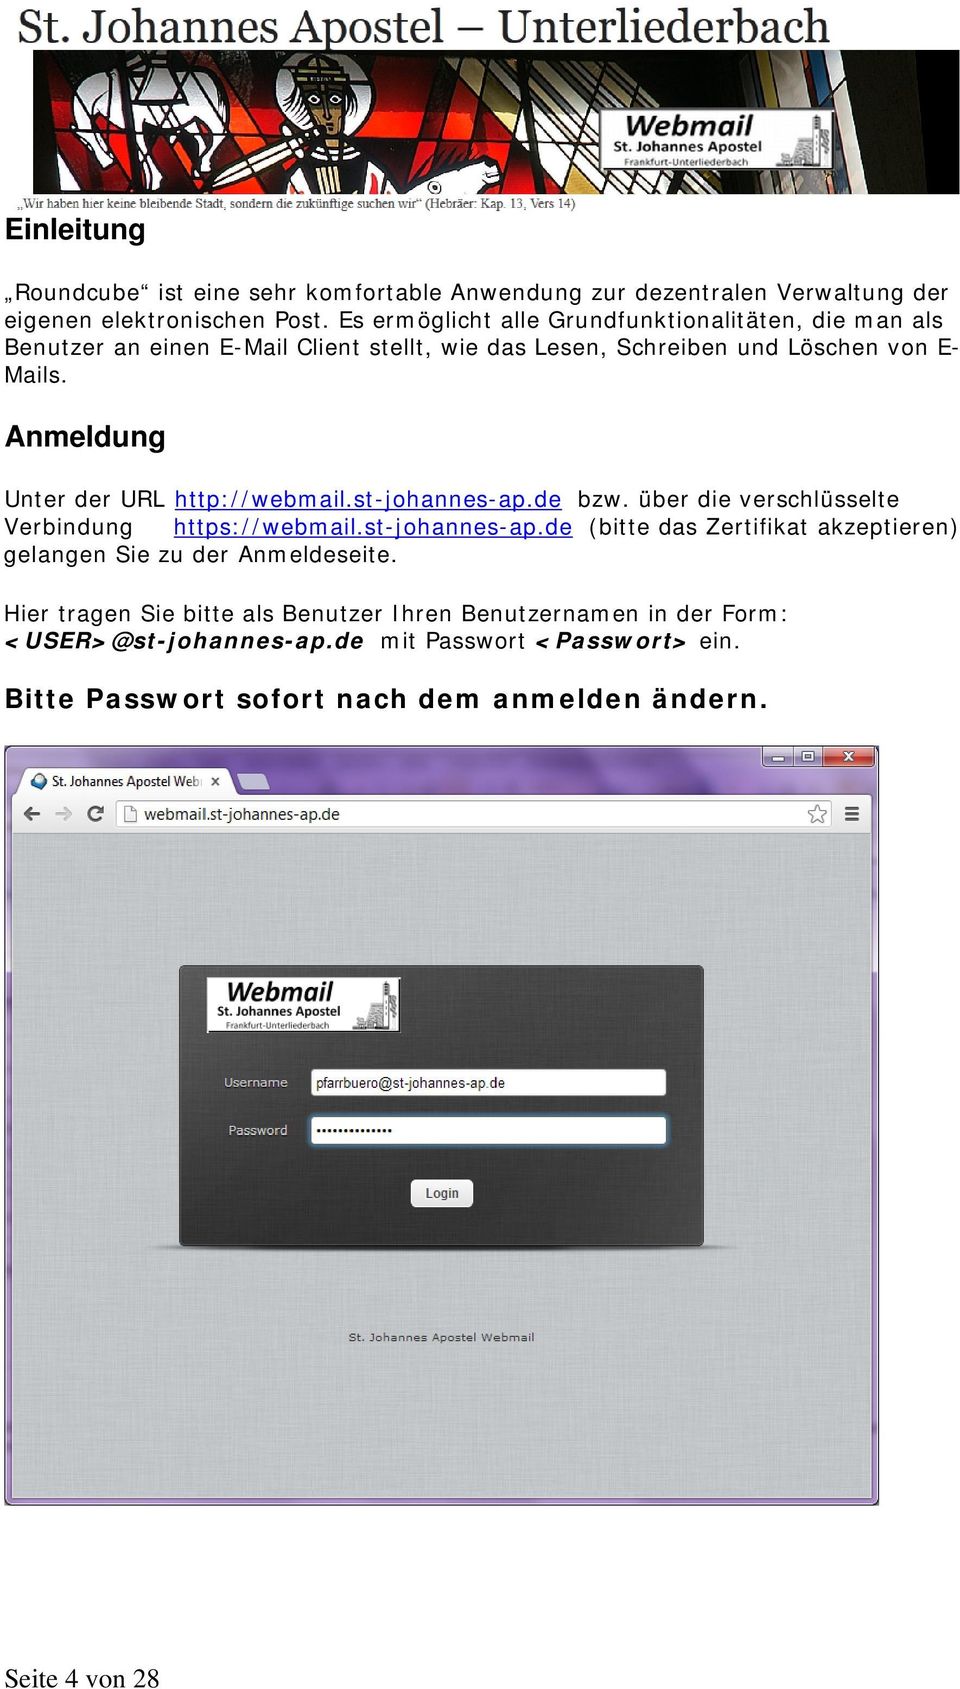 Anmeldung Unter der URL http://webmail.st-johannes-ap.de bzw. über die verschlüsselte Verbindung https://webmail.st-johannes-ap.de (bitte das Zertifikat akzeptieren) gelangen Sie zu der Anmeldeseite.